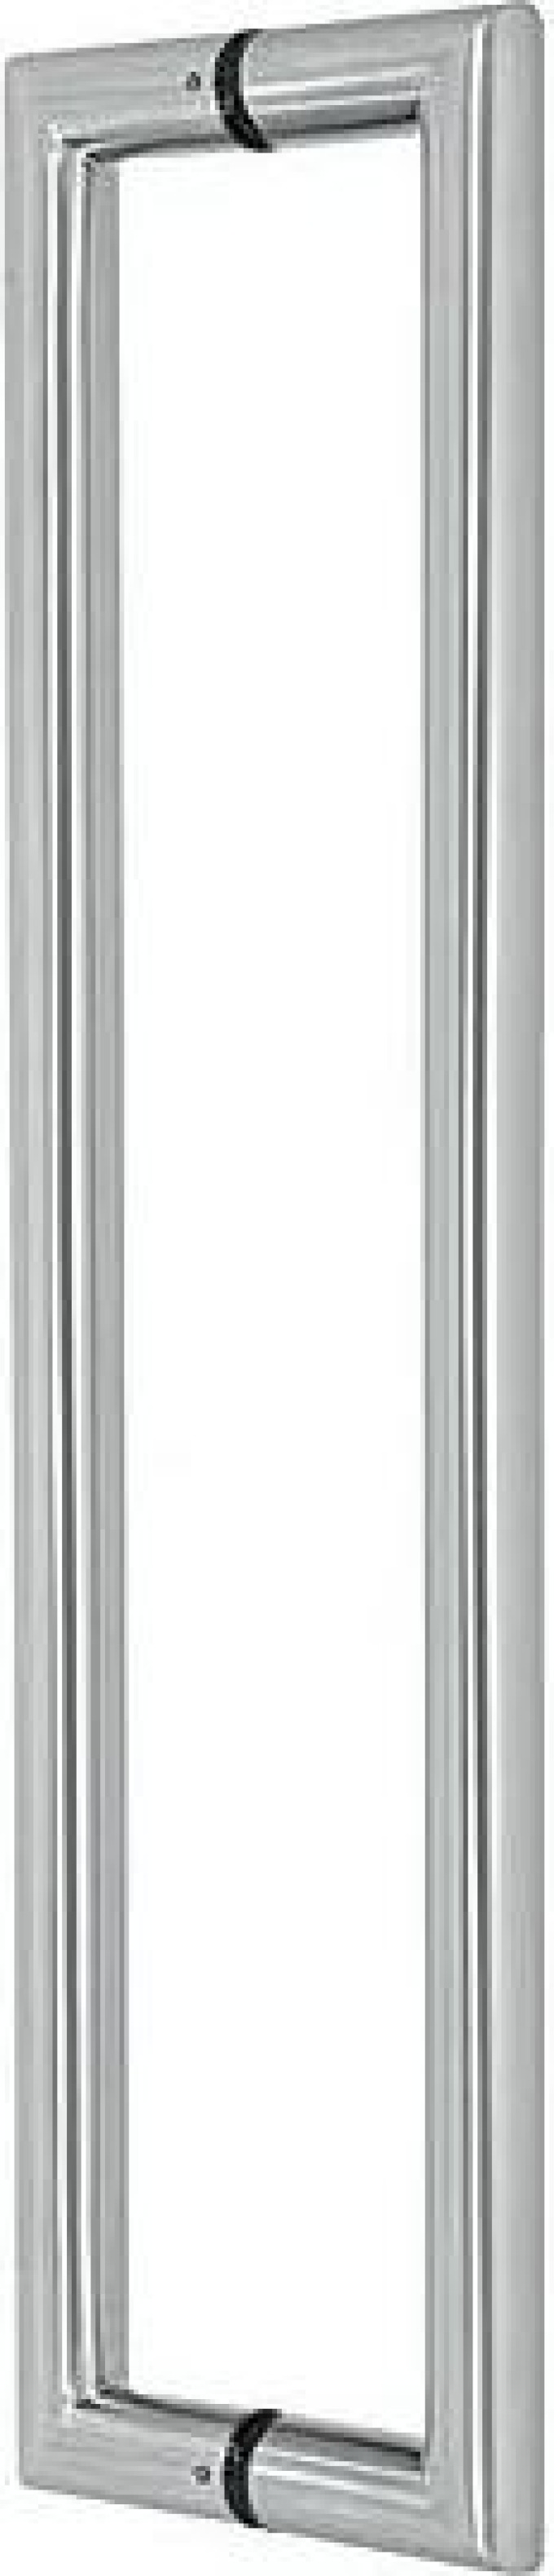 Madlo EUROLATON pro skleněné a dřevěné dveře - 82 (nerez), 380 x 350 x 80 (pár)